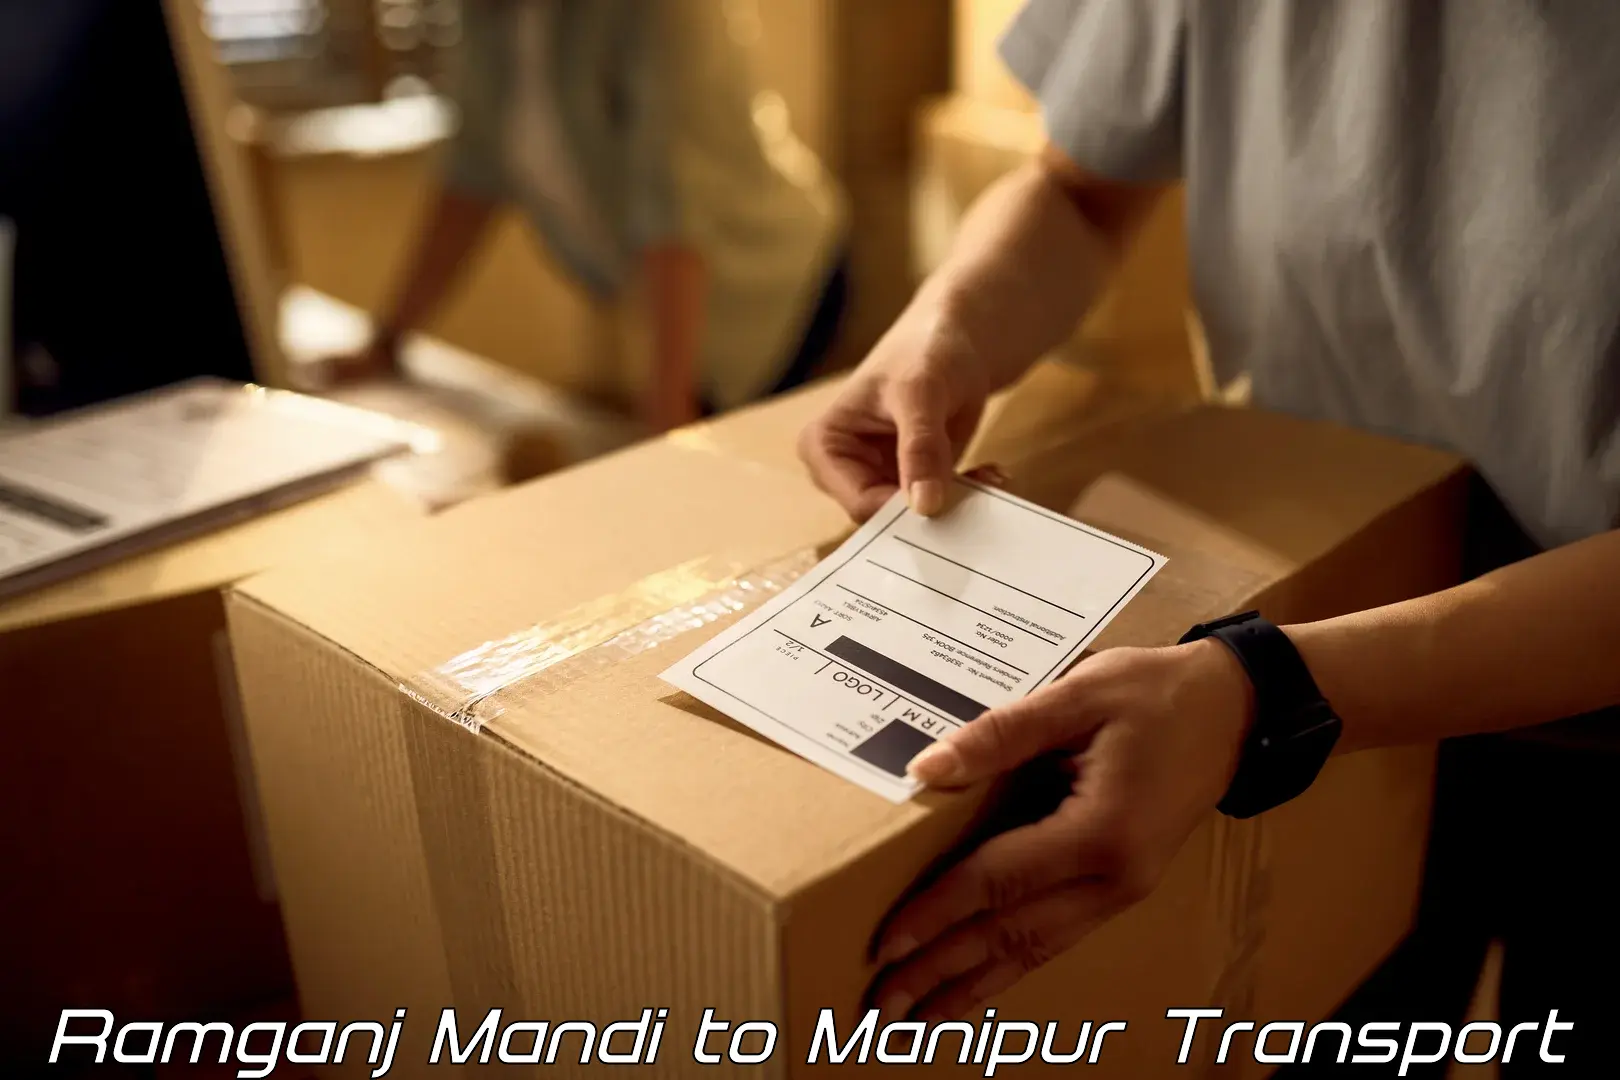 Daily transport service Ramganj Mandi to Ukhrul